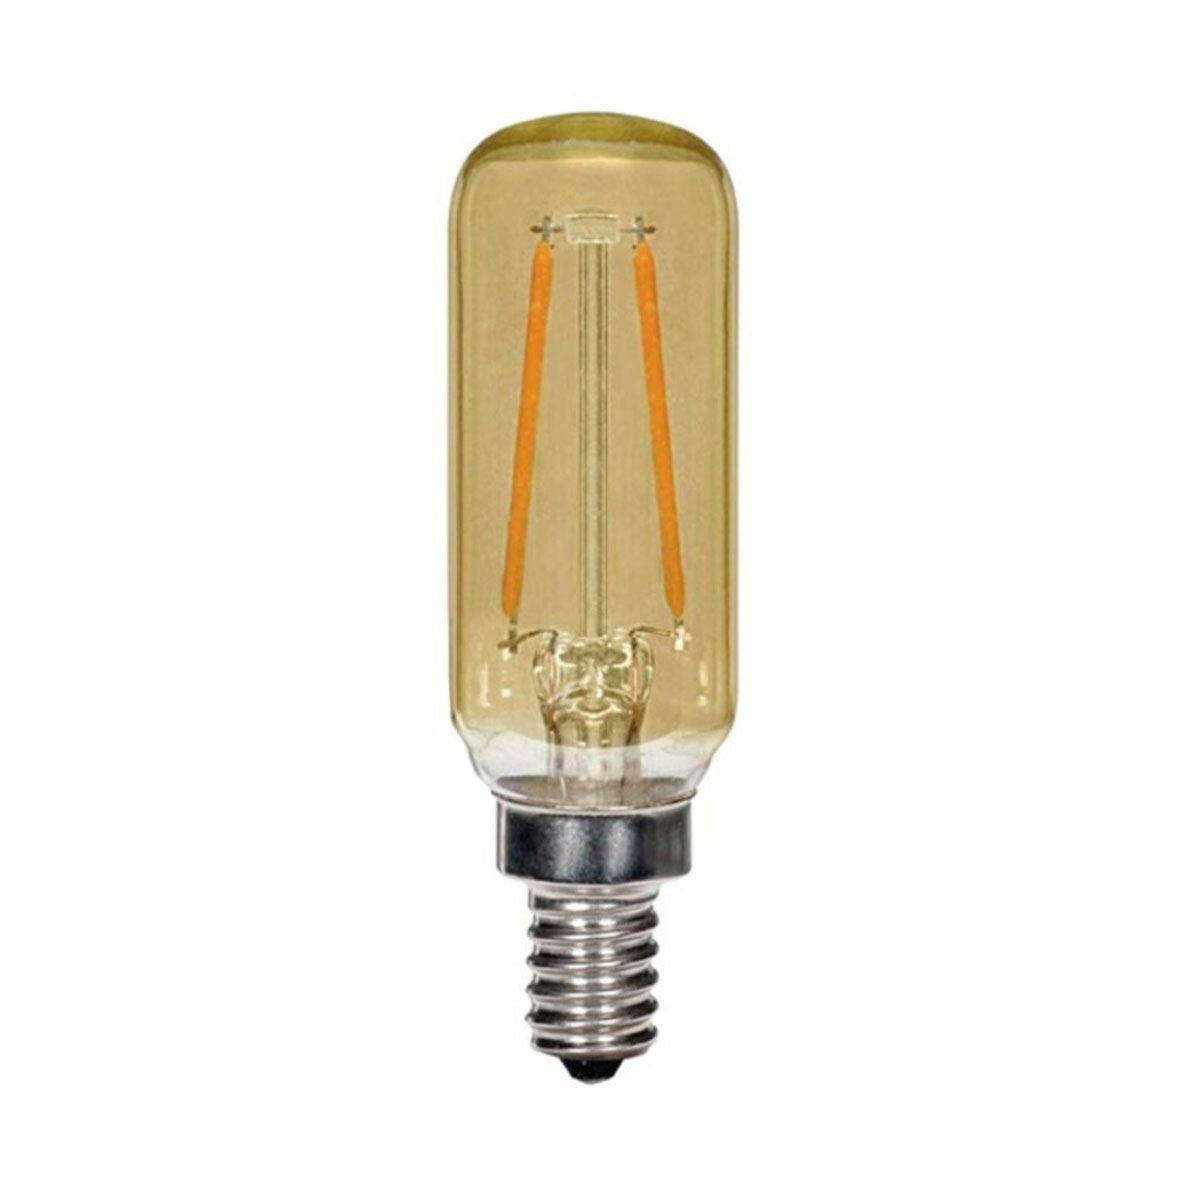 LED T6 Single Tube Bulb, 3 Watt, 150 Lumens, 2000K, E12 Candelabra Base, Amber Finish - Bees Lighting